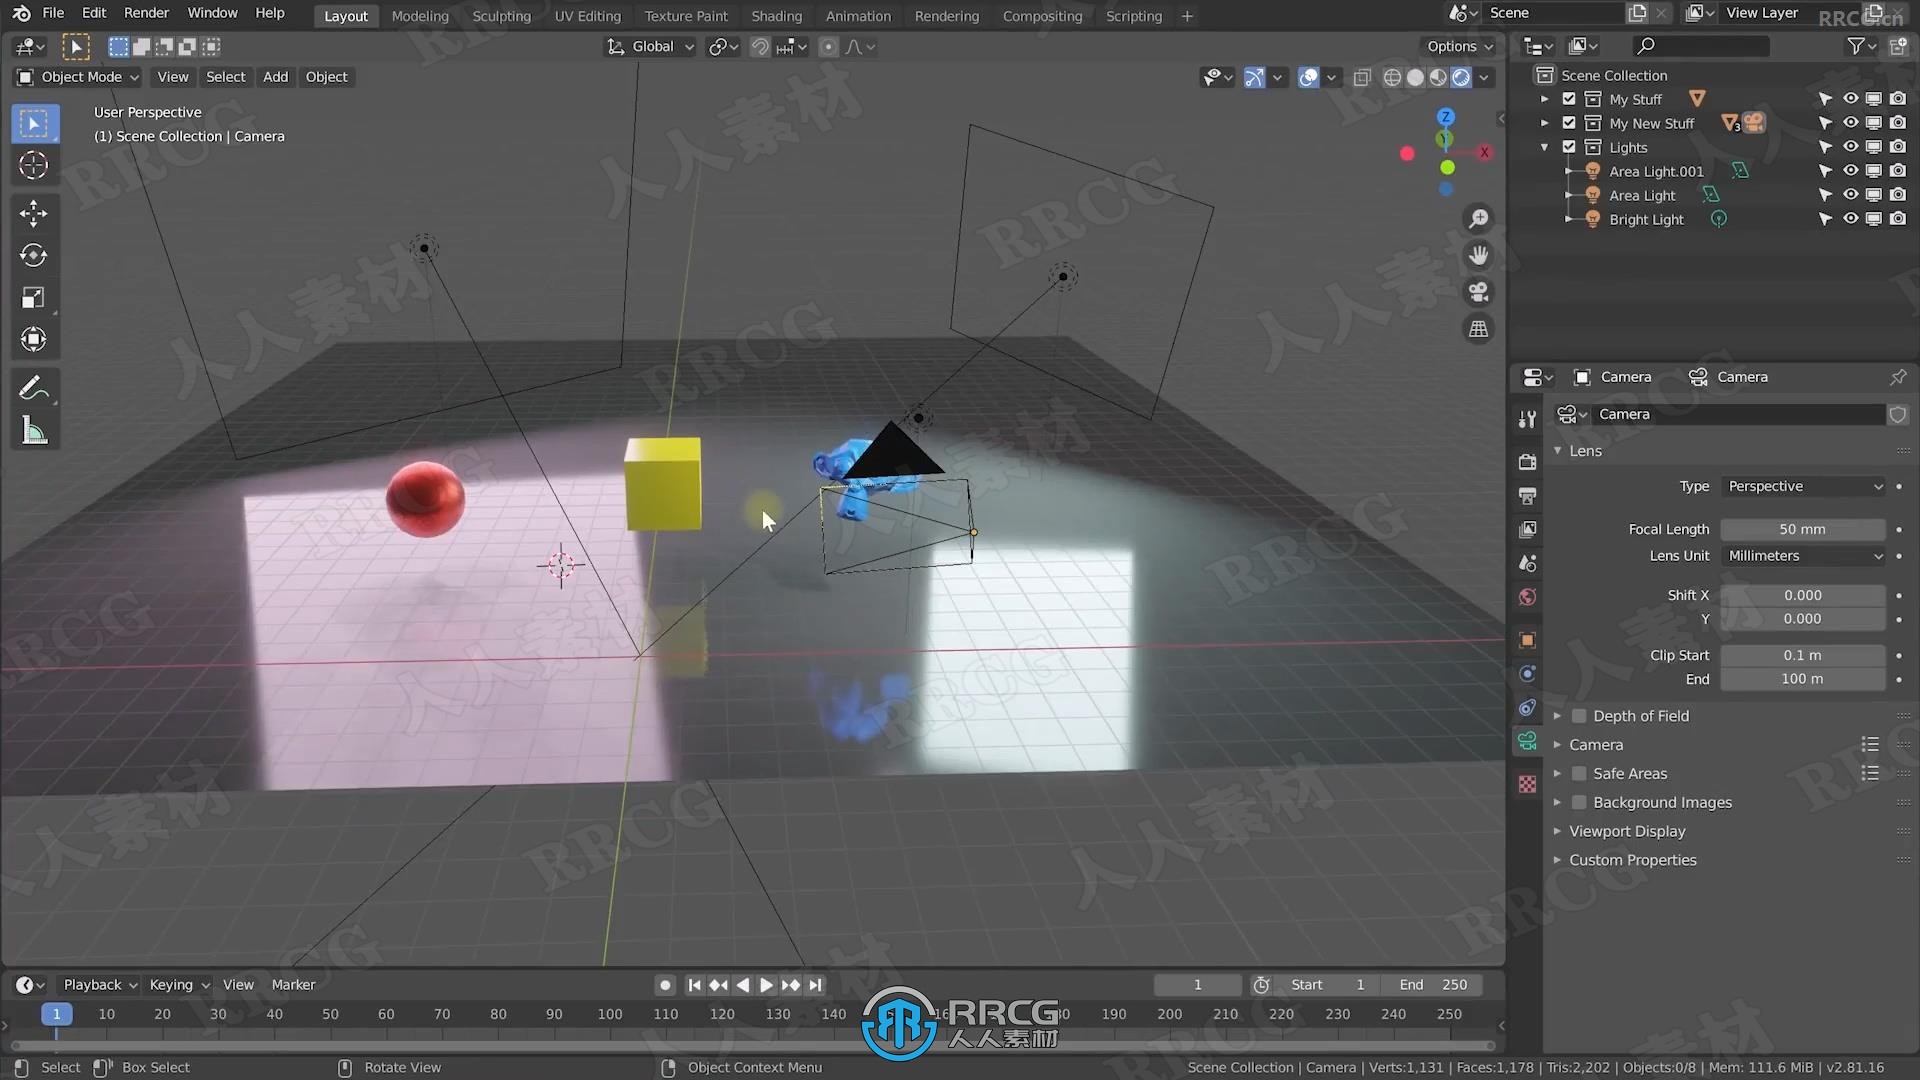 Blender 3D建模与动画初学者入门技术视频教程